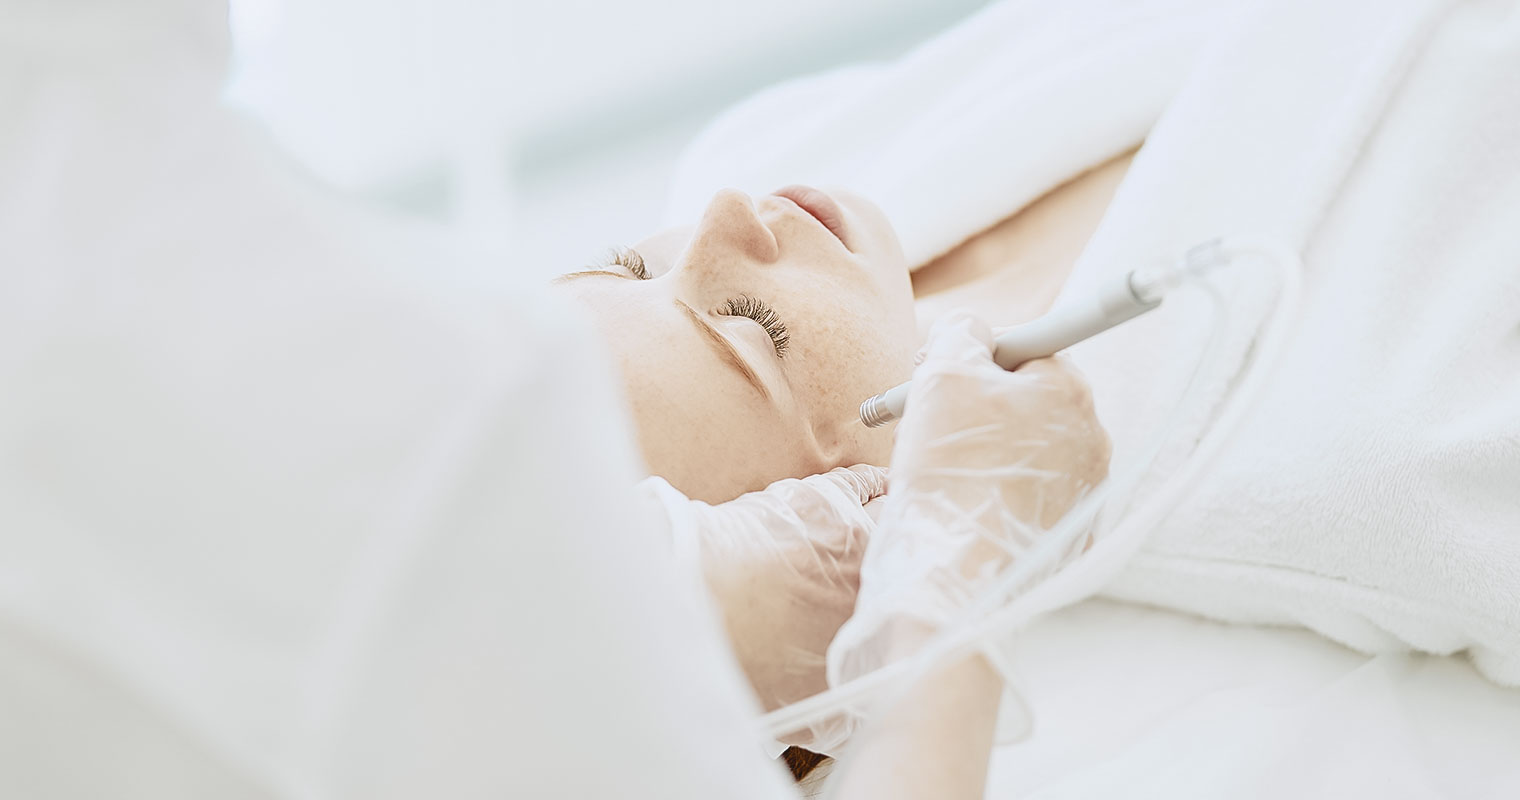 Woman going through facial treatment